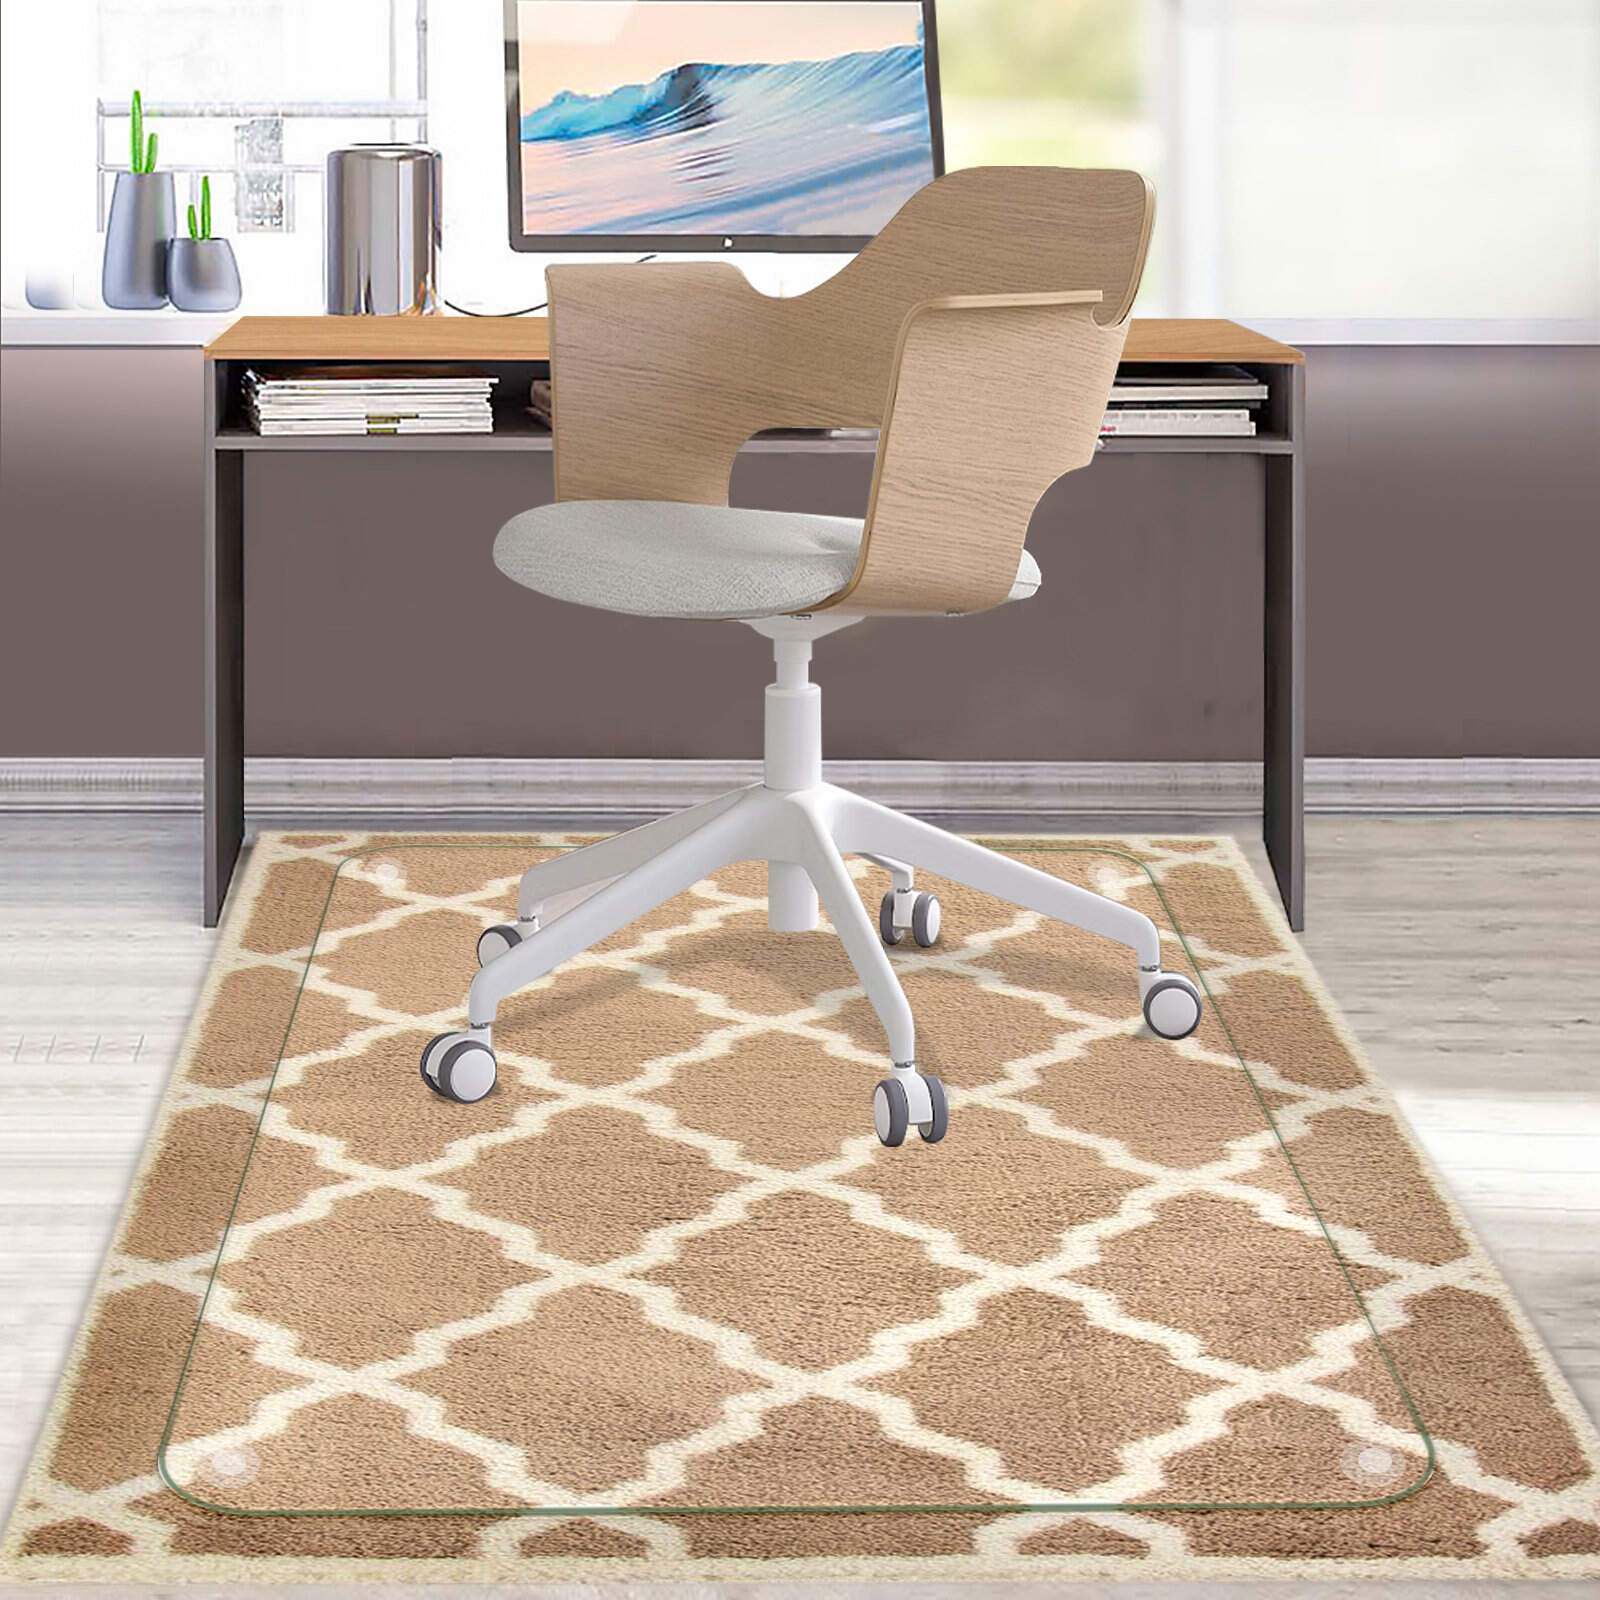 office floor mats for carpet        <h3 class=